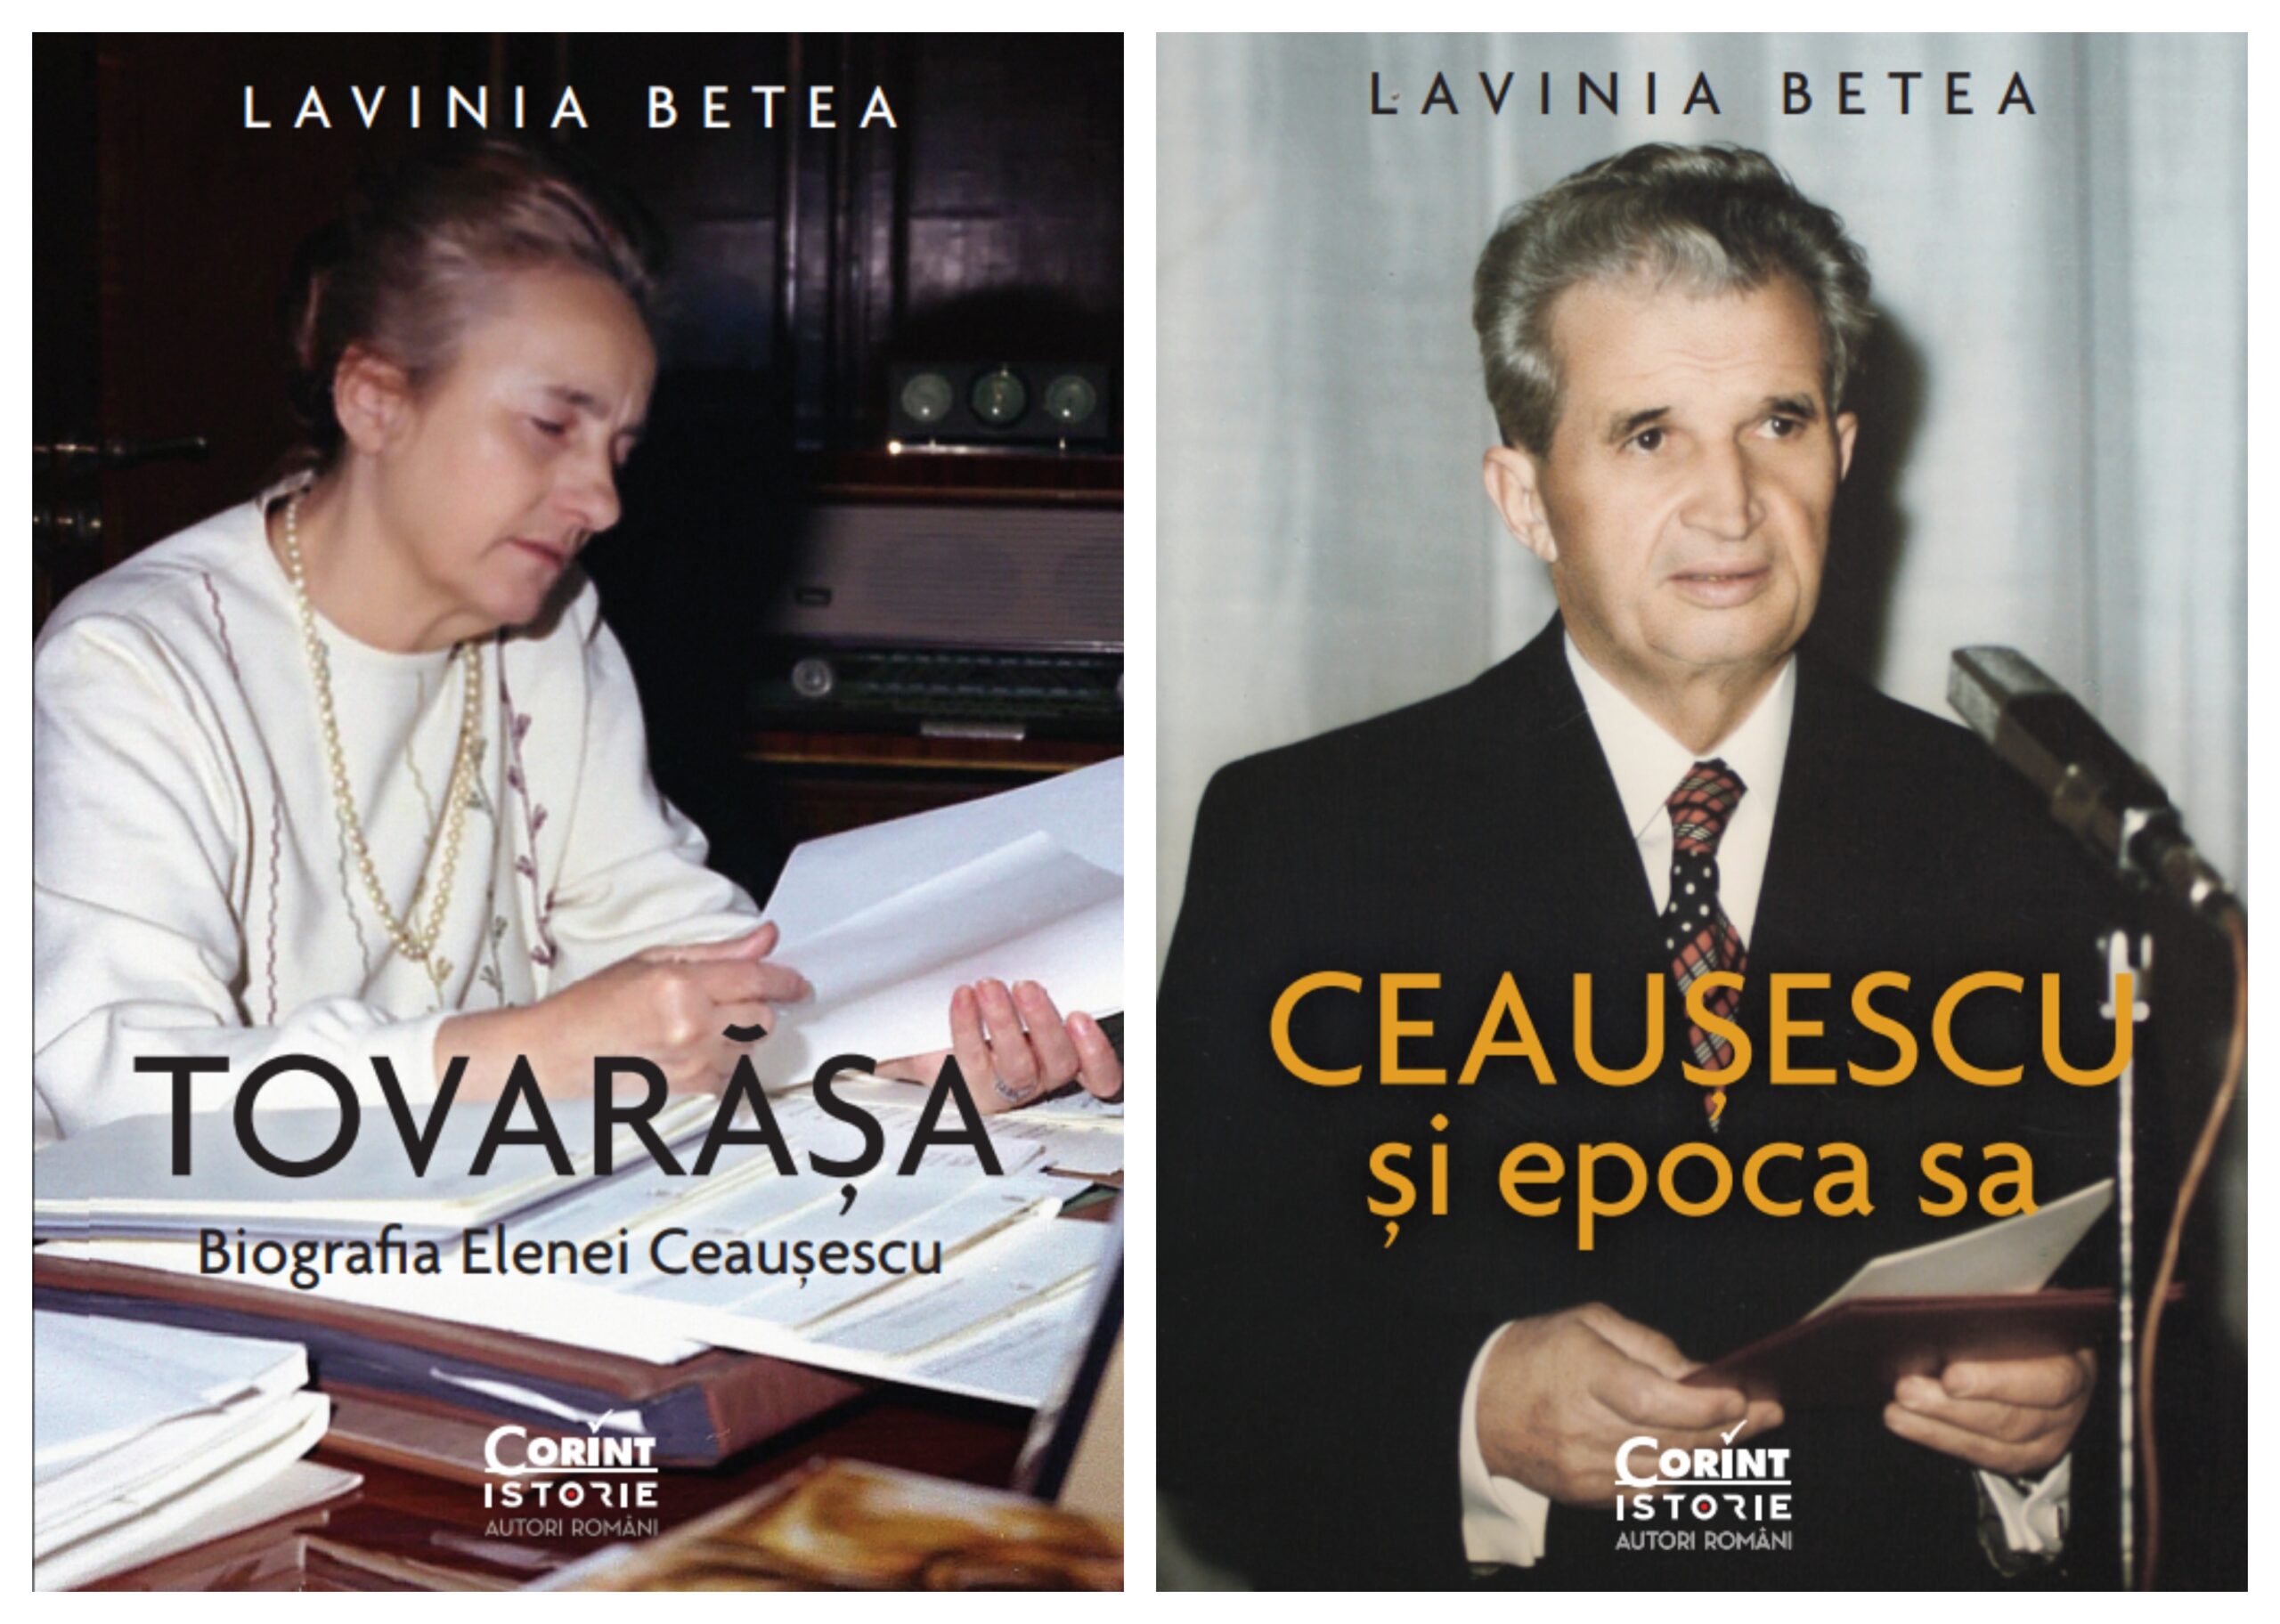 Editura Corint publică două noi volume semnate de Lavinia Betea – Comunicat de presă